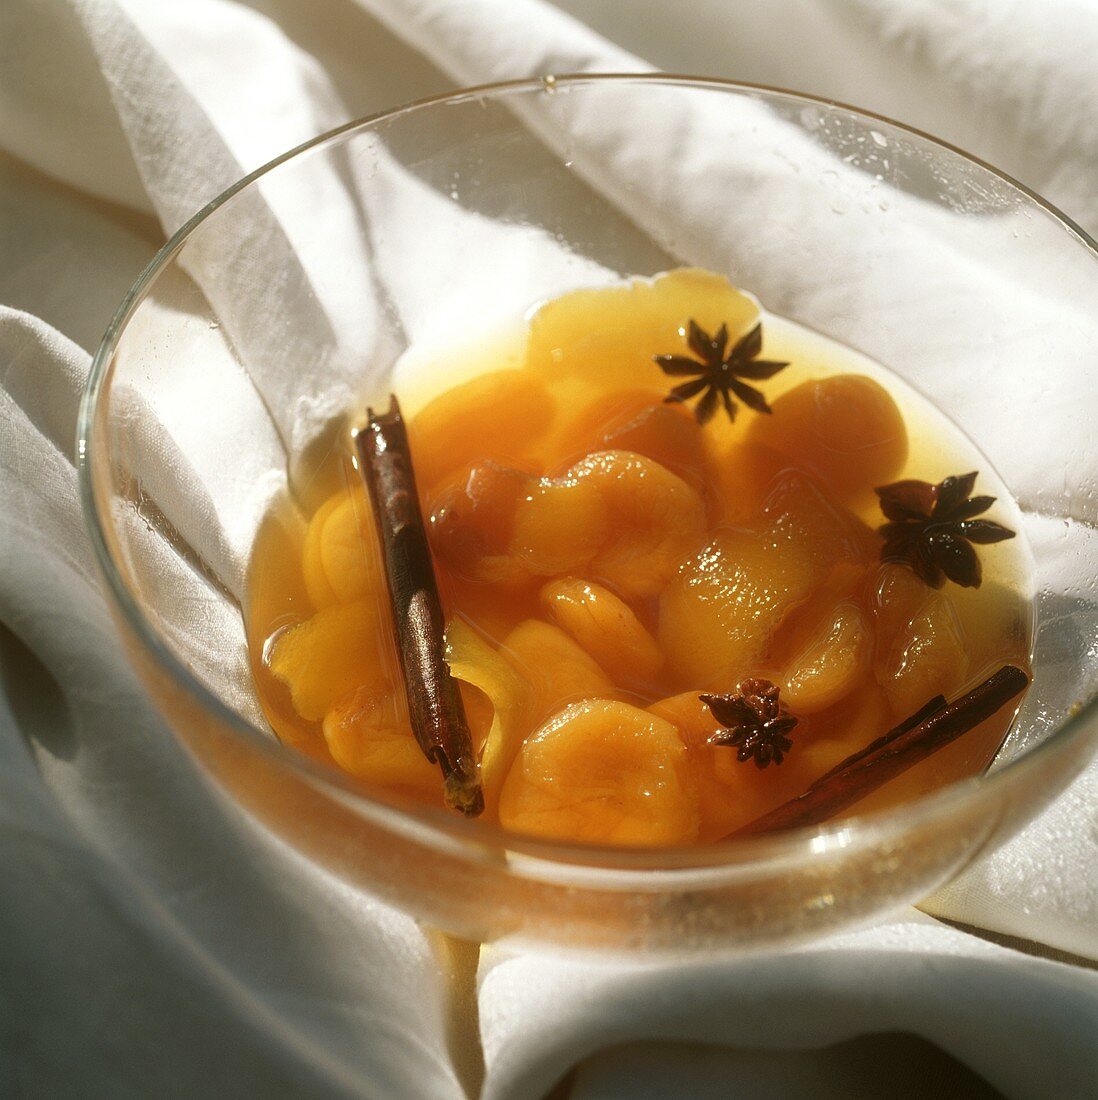 Bottled apricots